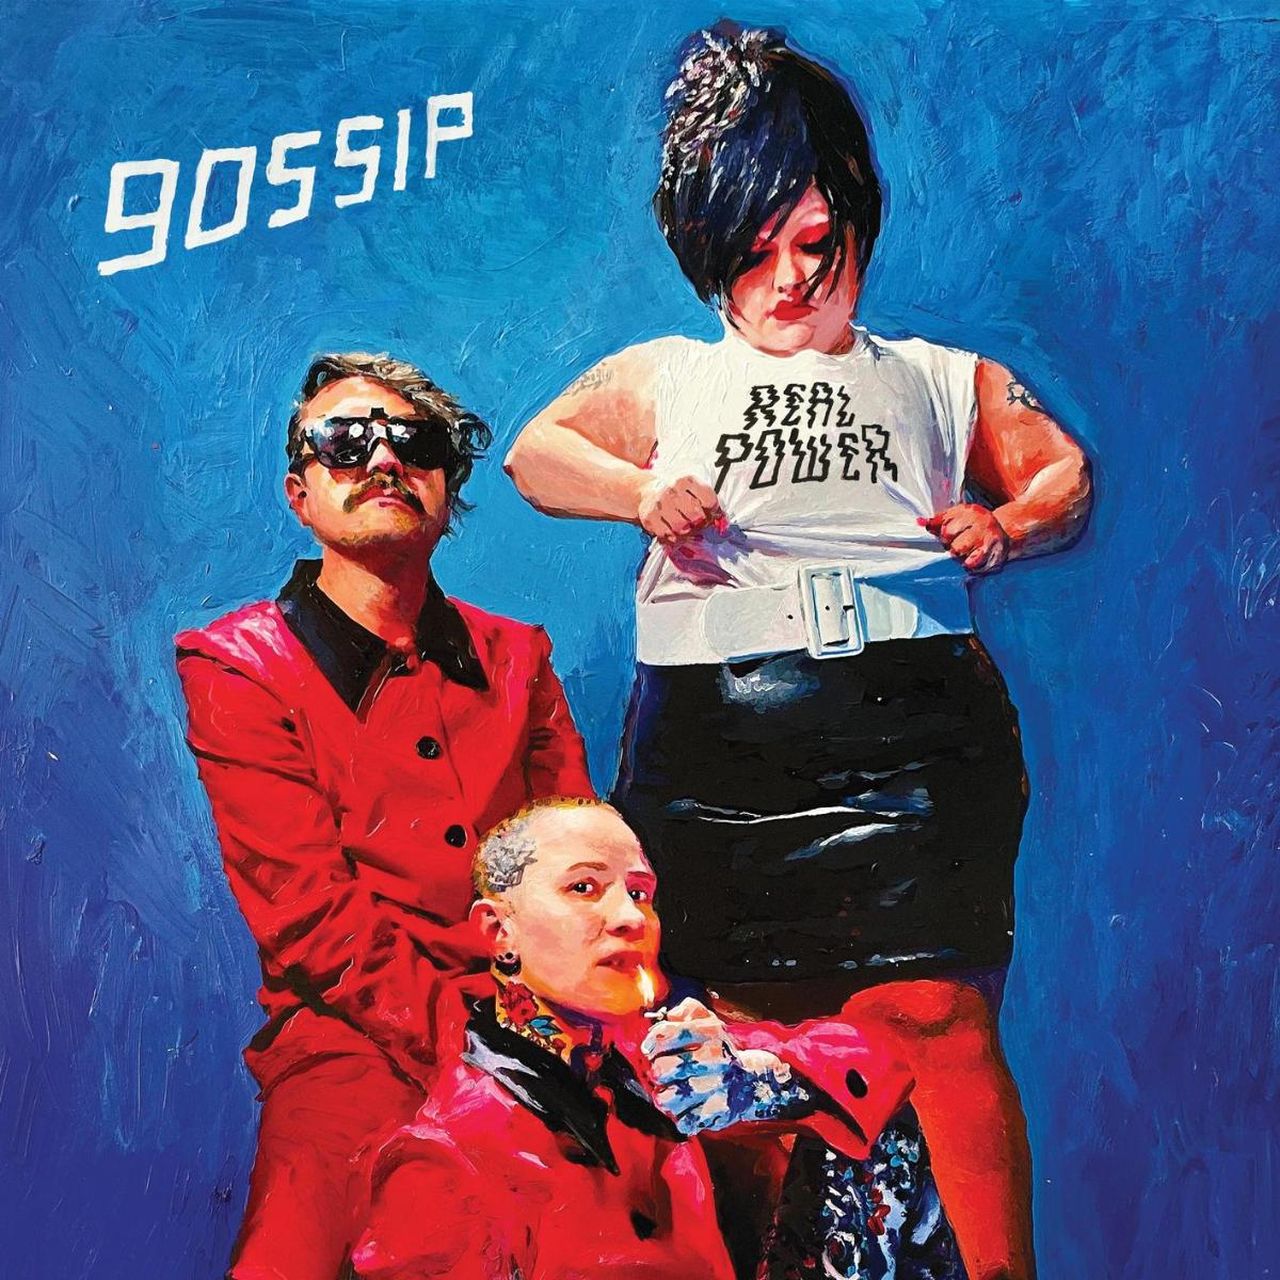 Gossip und ihre neues Album "Real Power"